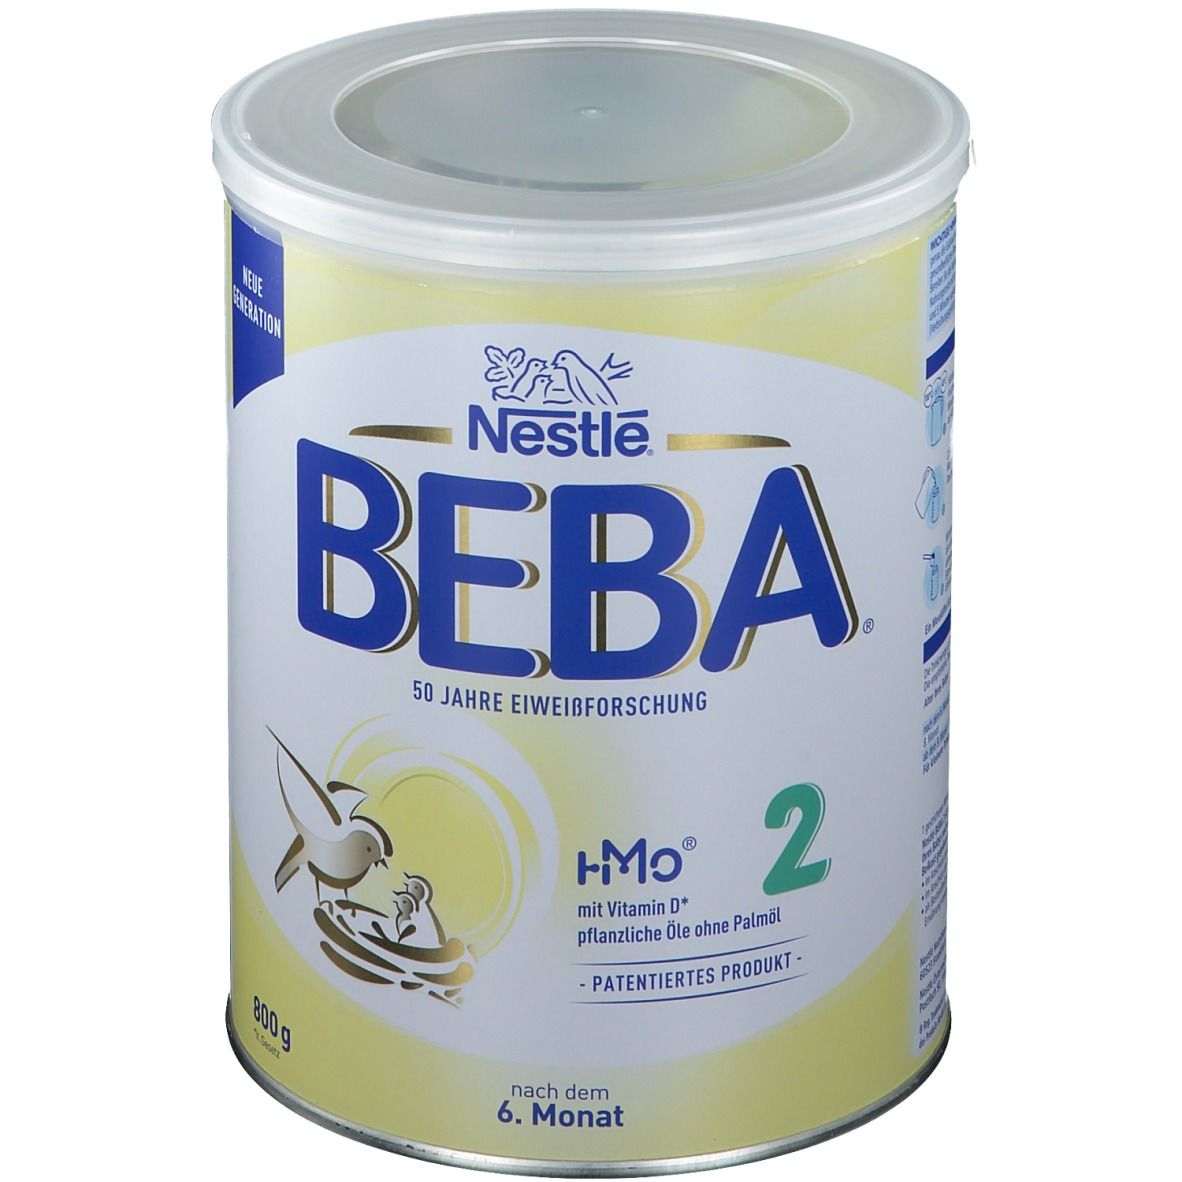 Nestlé BEBA® 2 Folgemilch nach dem 6. Monat